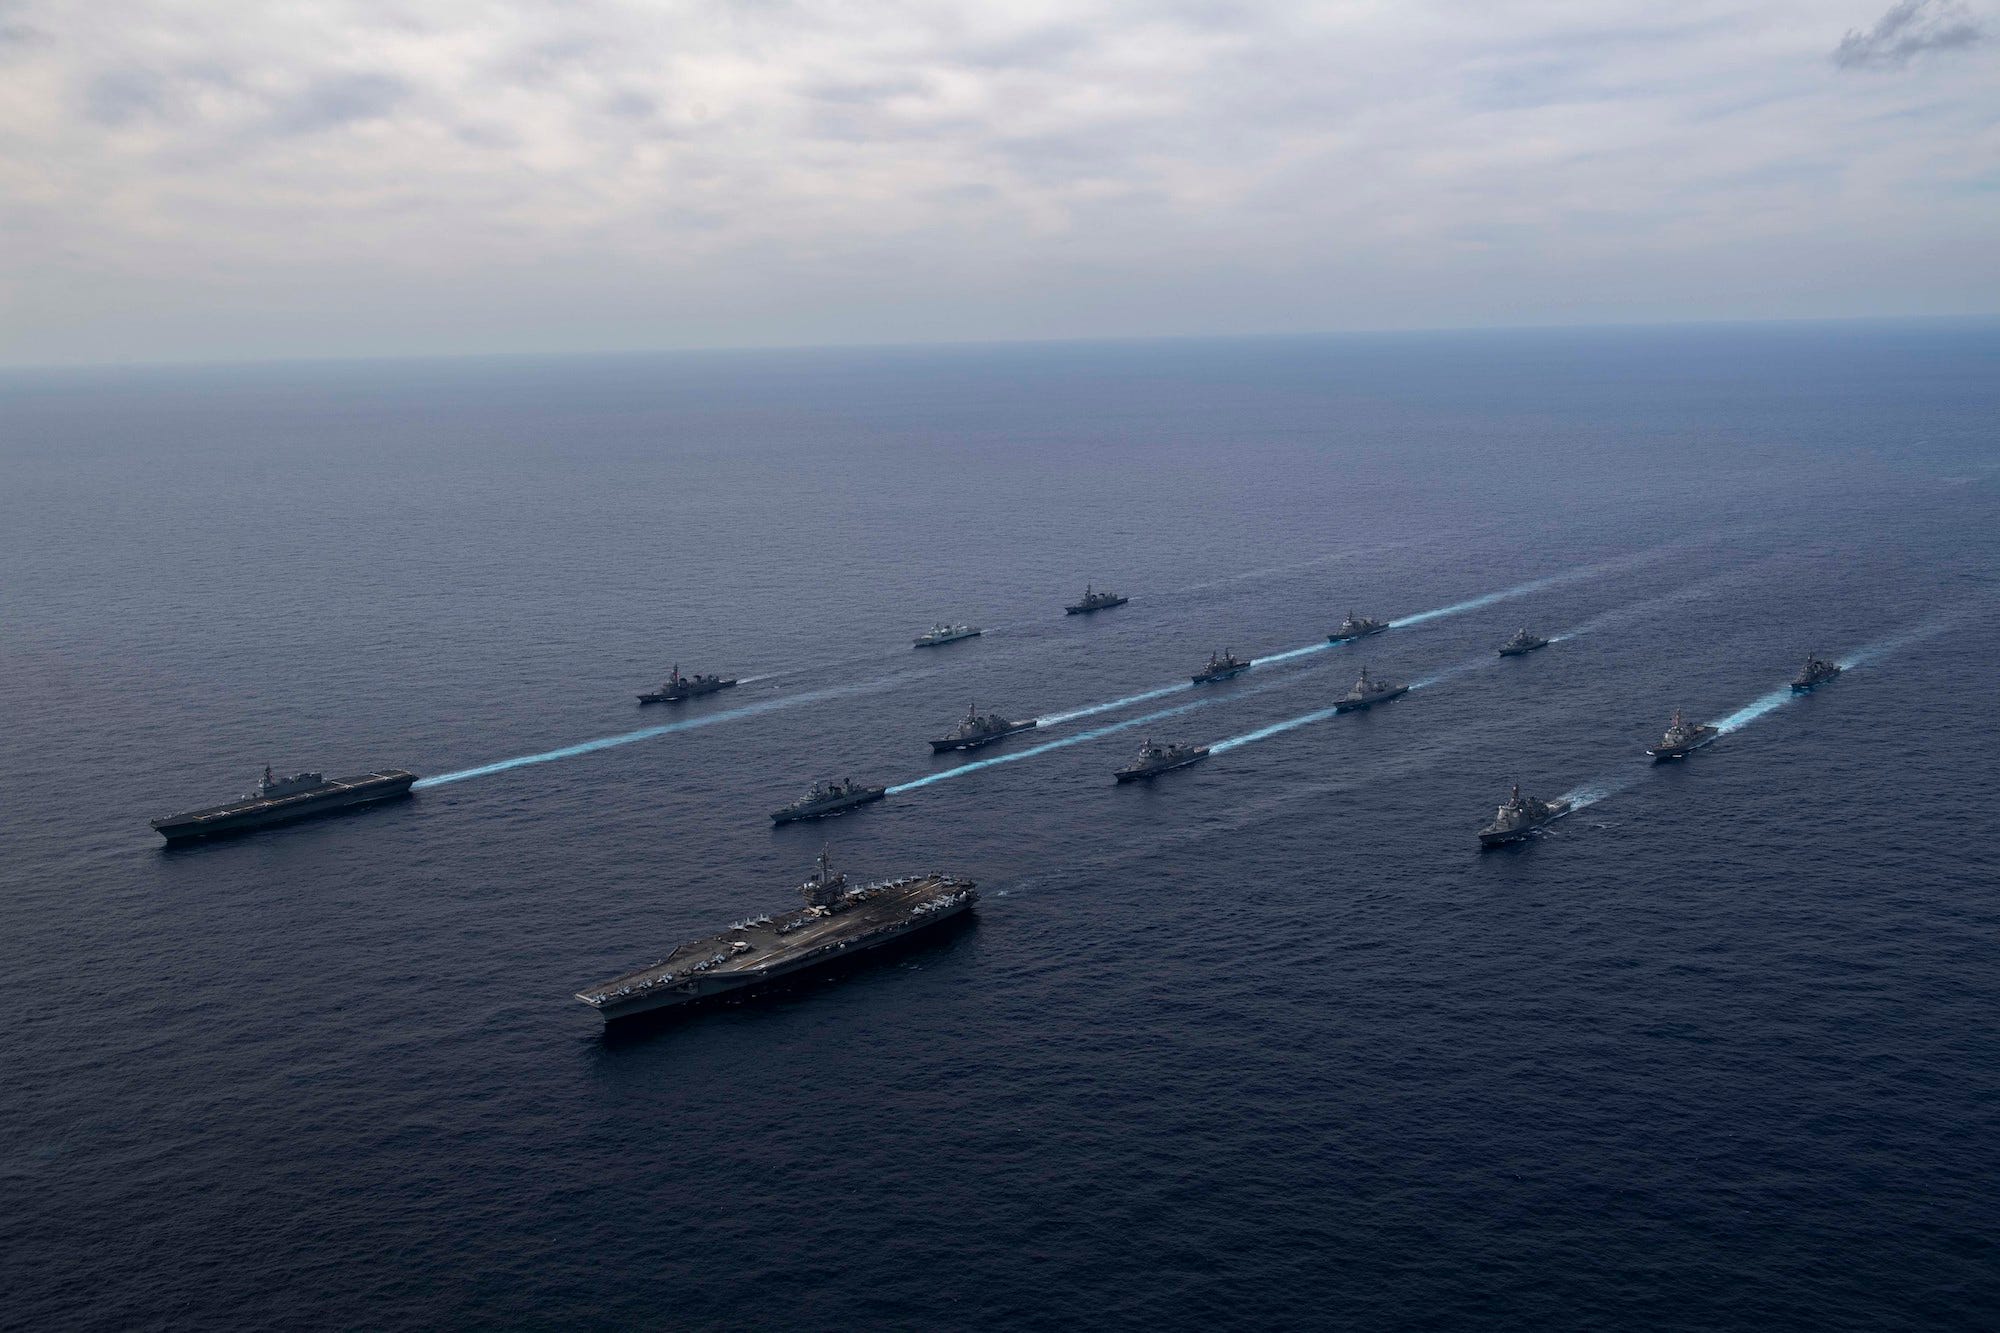 Australia, Canada, Germany, Japan, US Navy ships